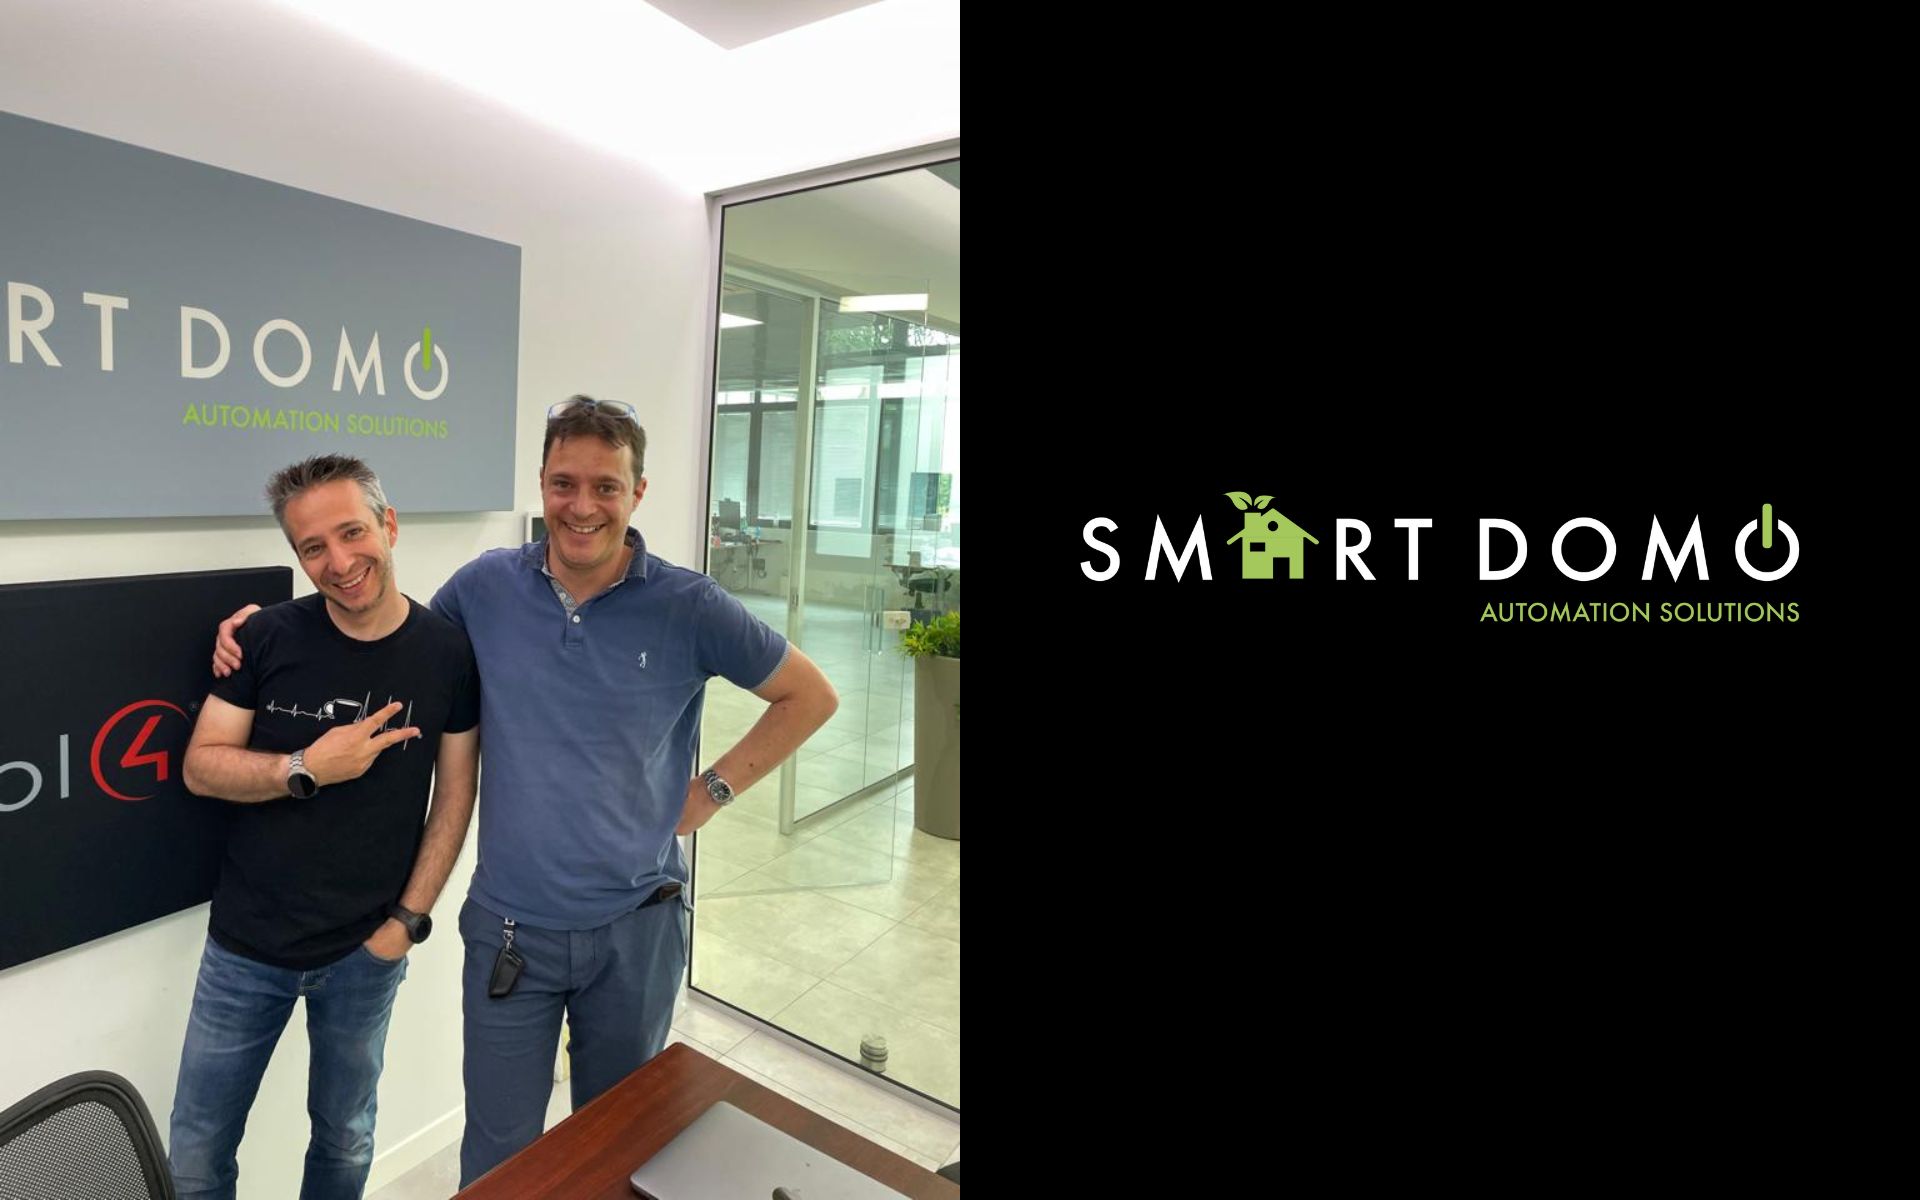 Andrea Galeazzi sceglie Smart Domo per il suo impianto domotico | Smart Domo